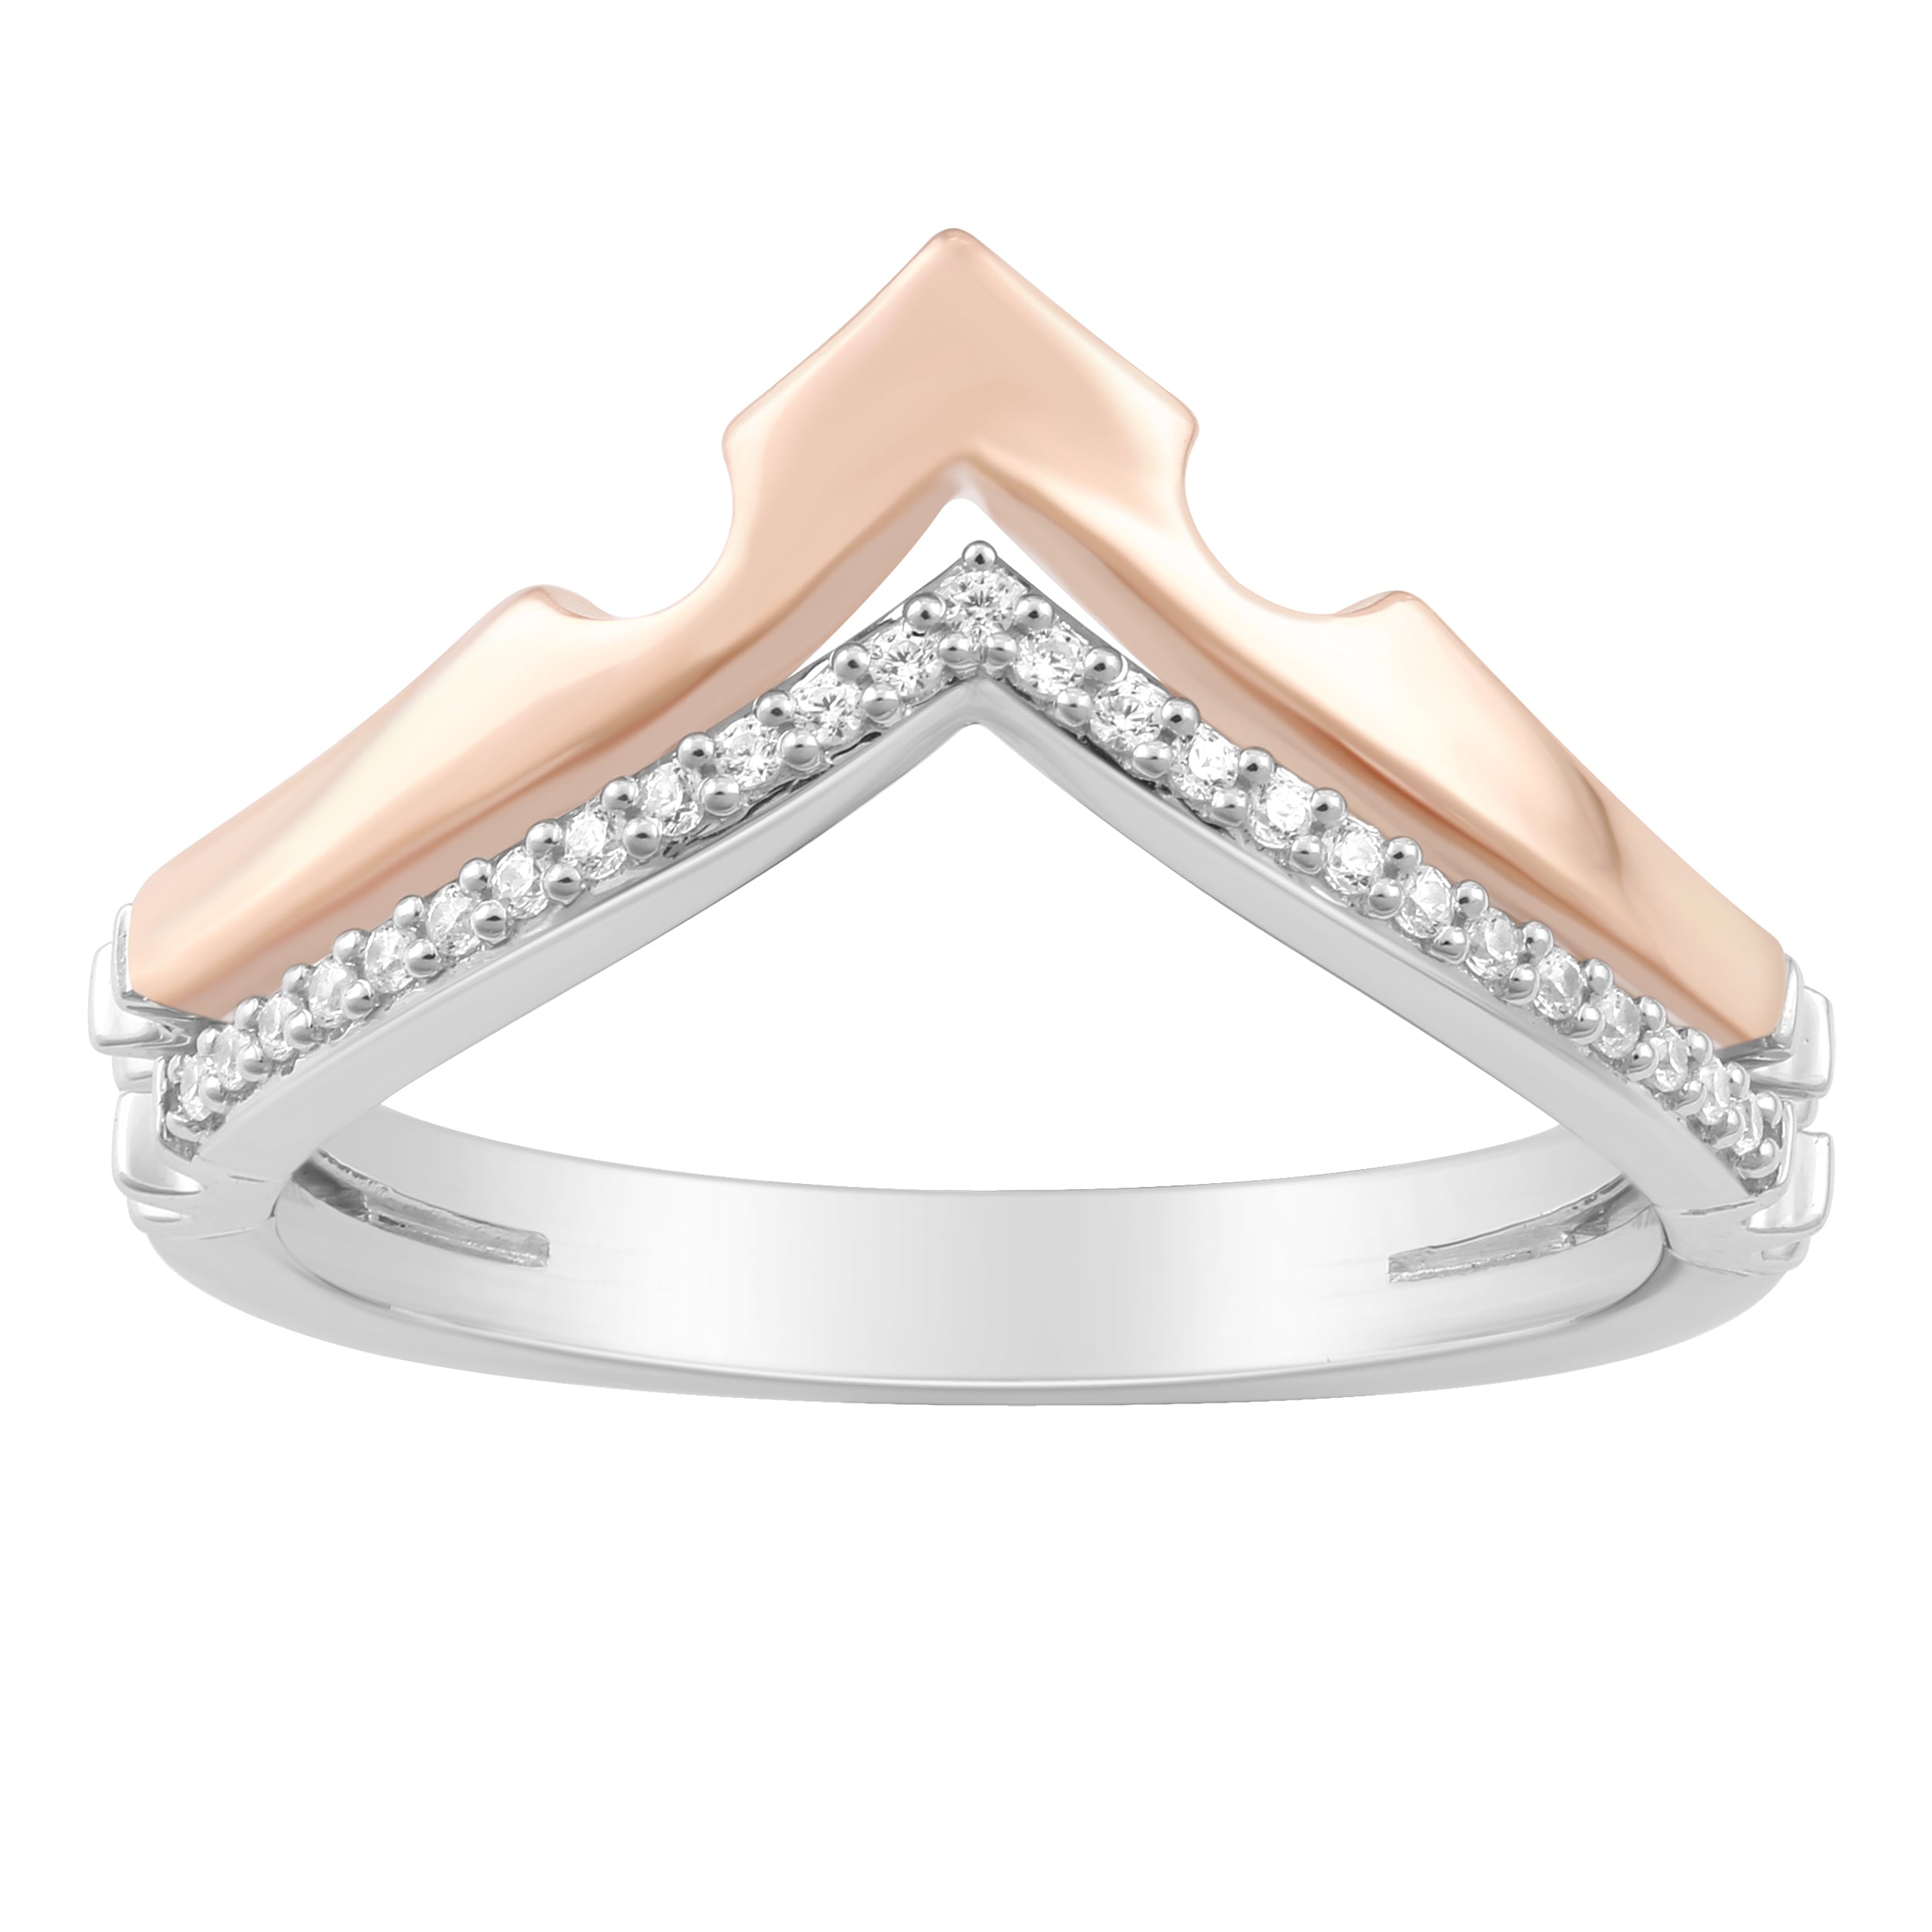 Book your Diamond ring 💎🙏 #diamond #diamondring #diamondjewellery #g... |  TikTok